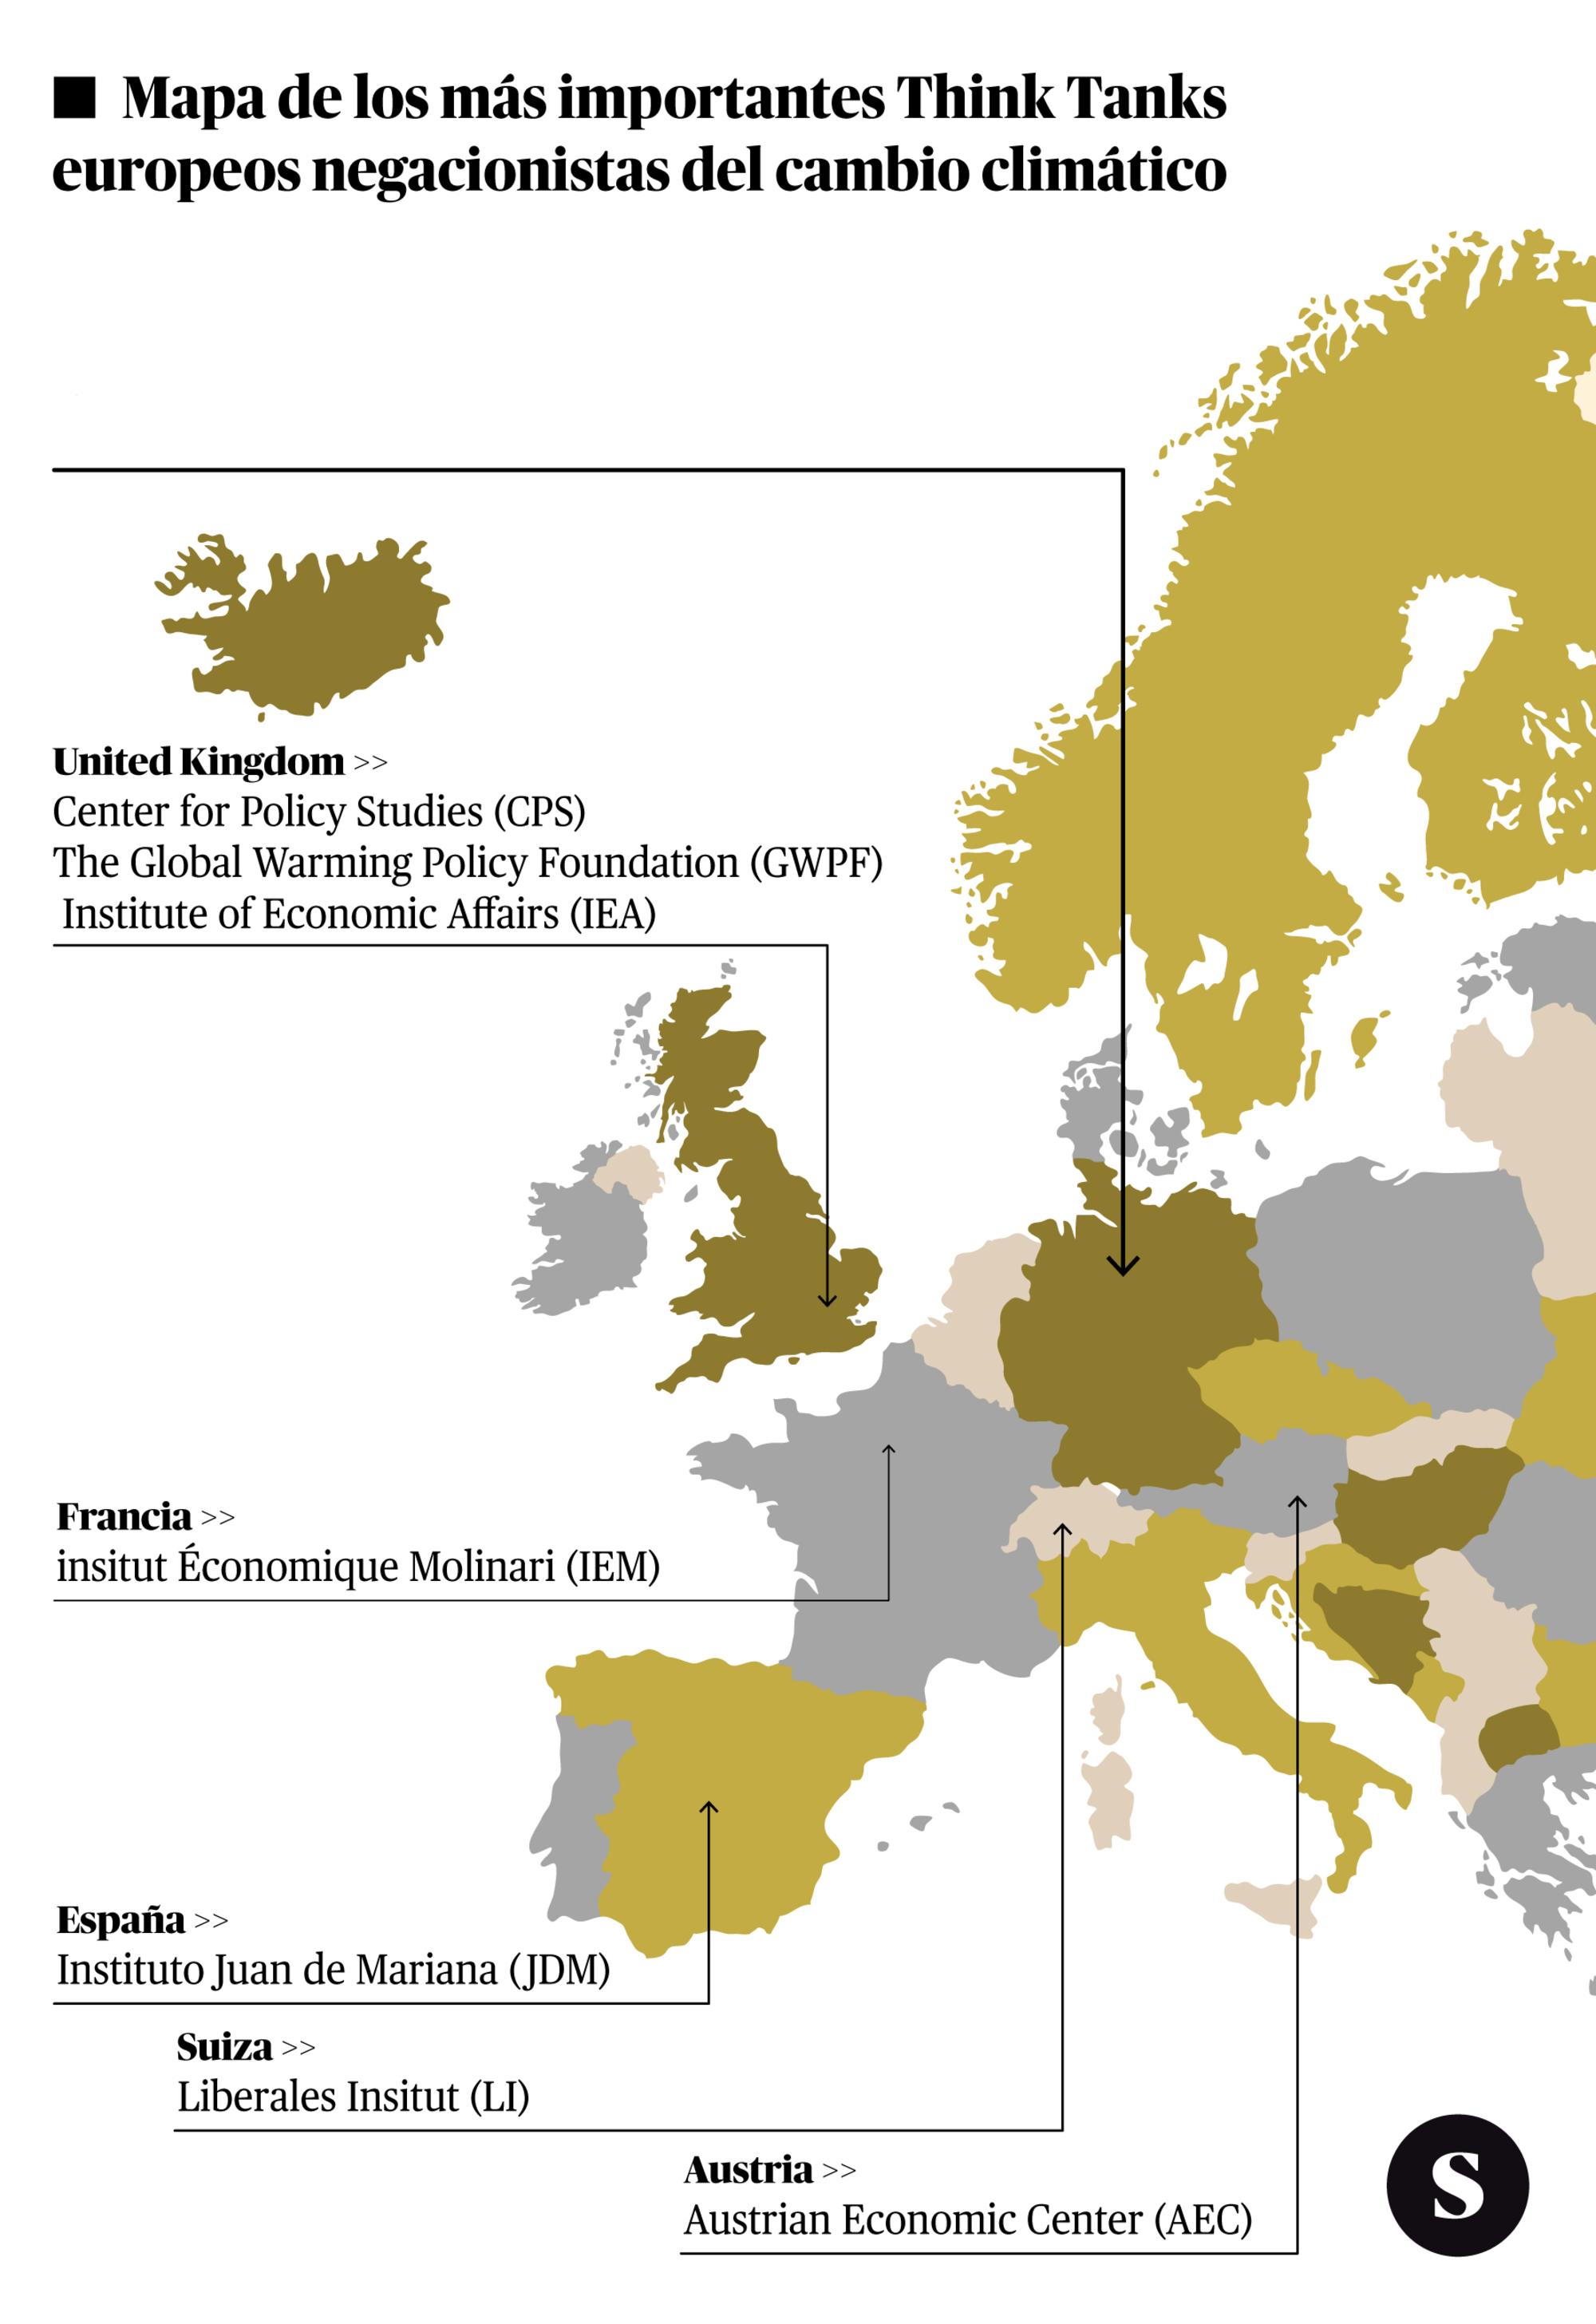 Los principales think tanks negacionistas en Europa